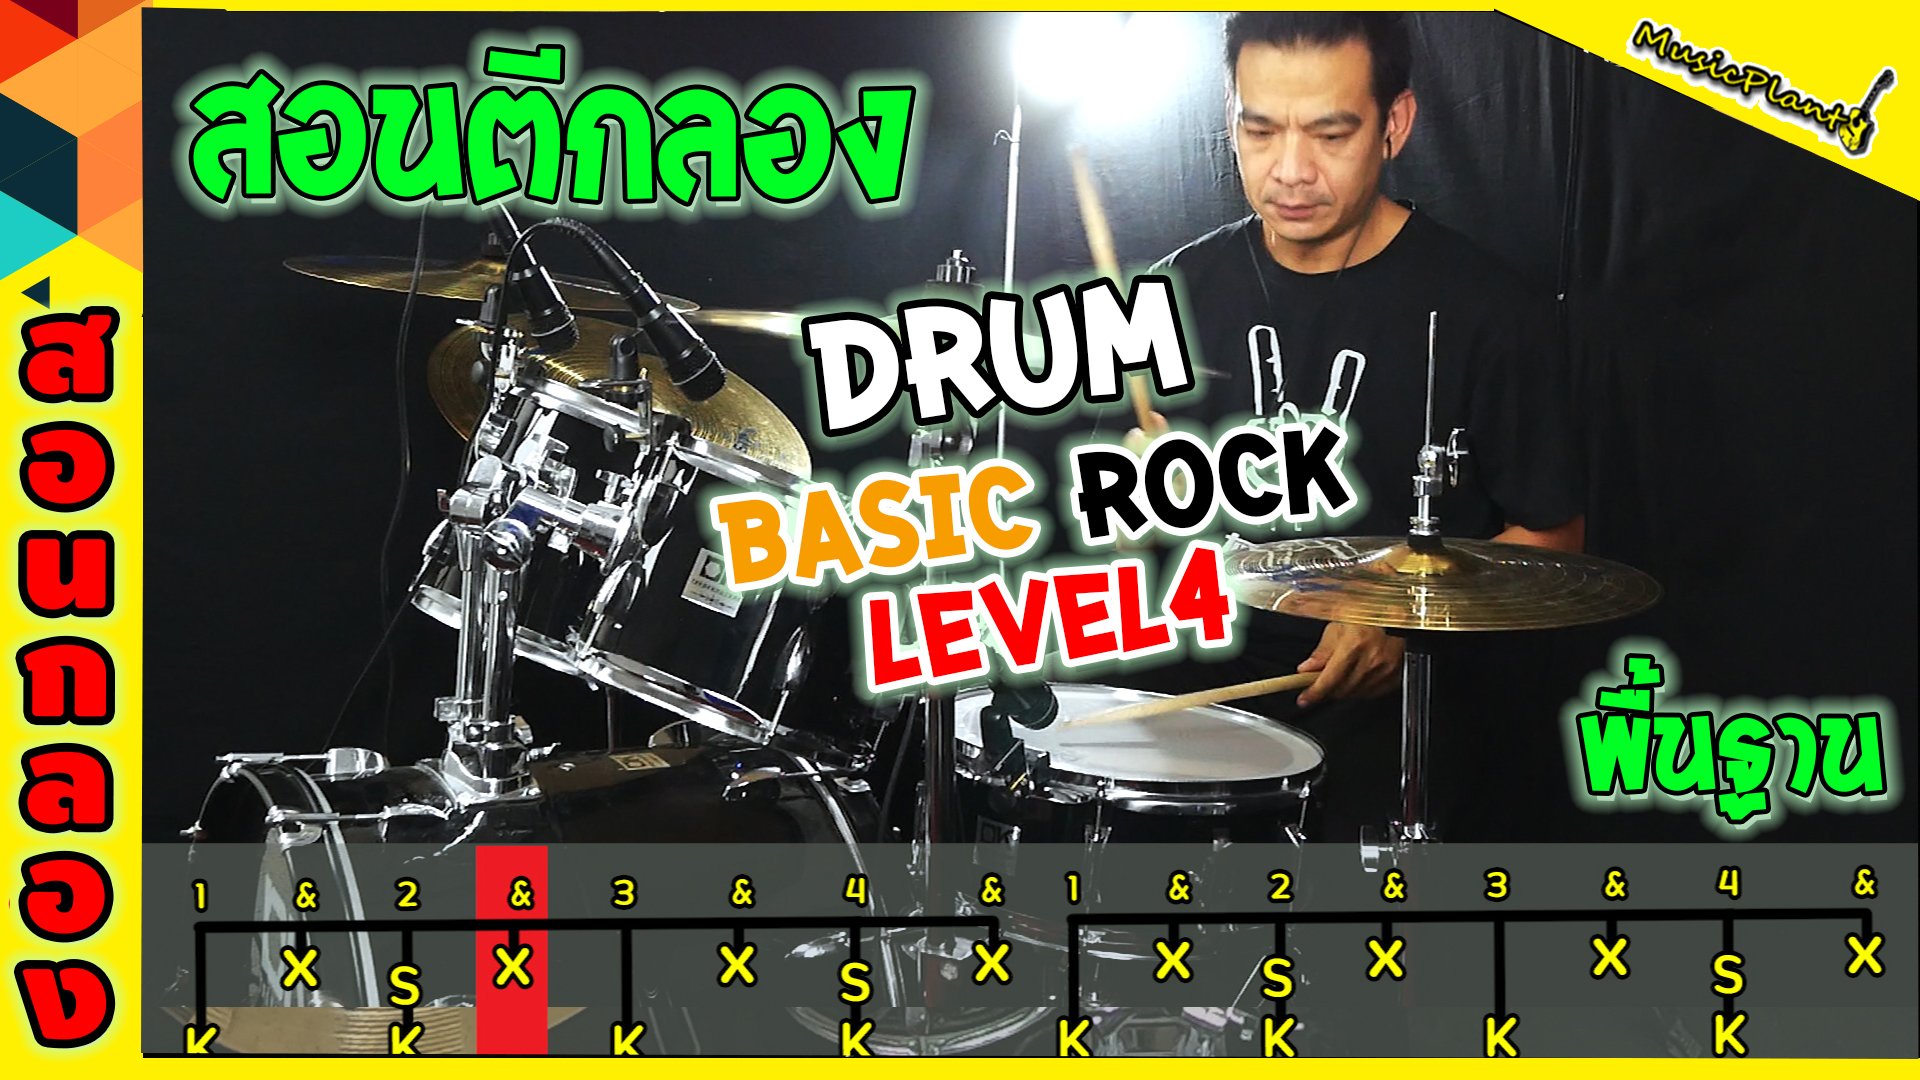 สอนตีกลองจังหวะร๊อค Level4 Drum Basic Rock